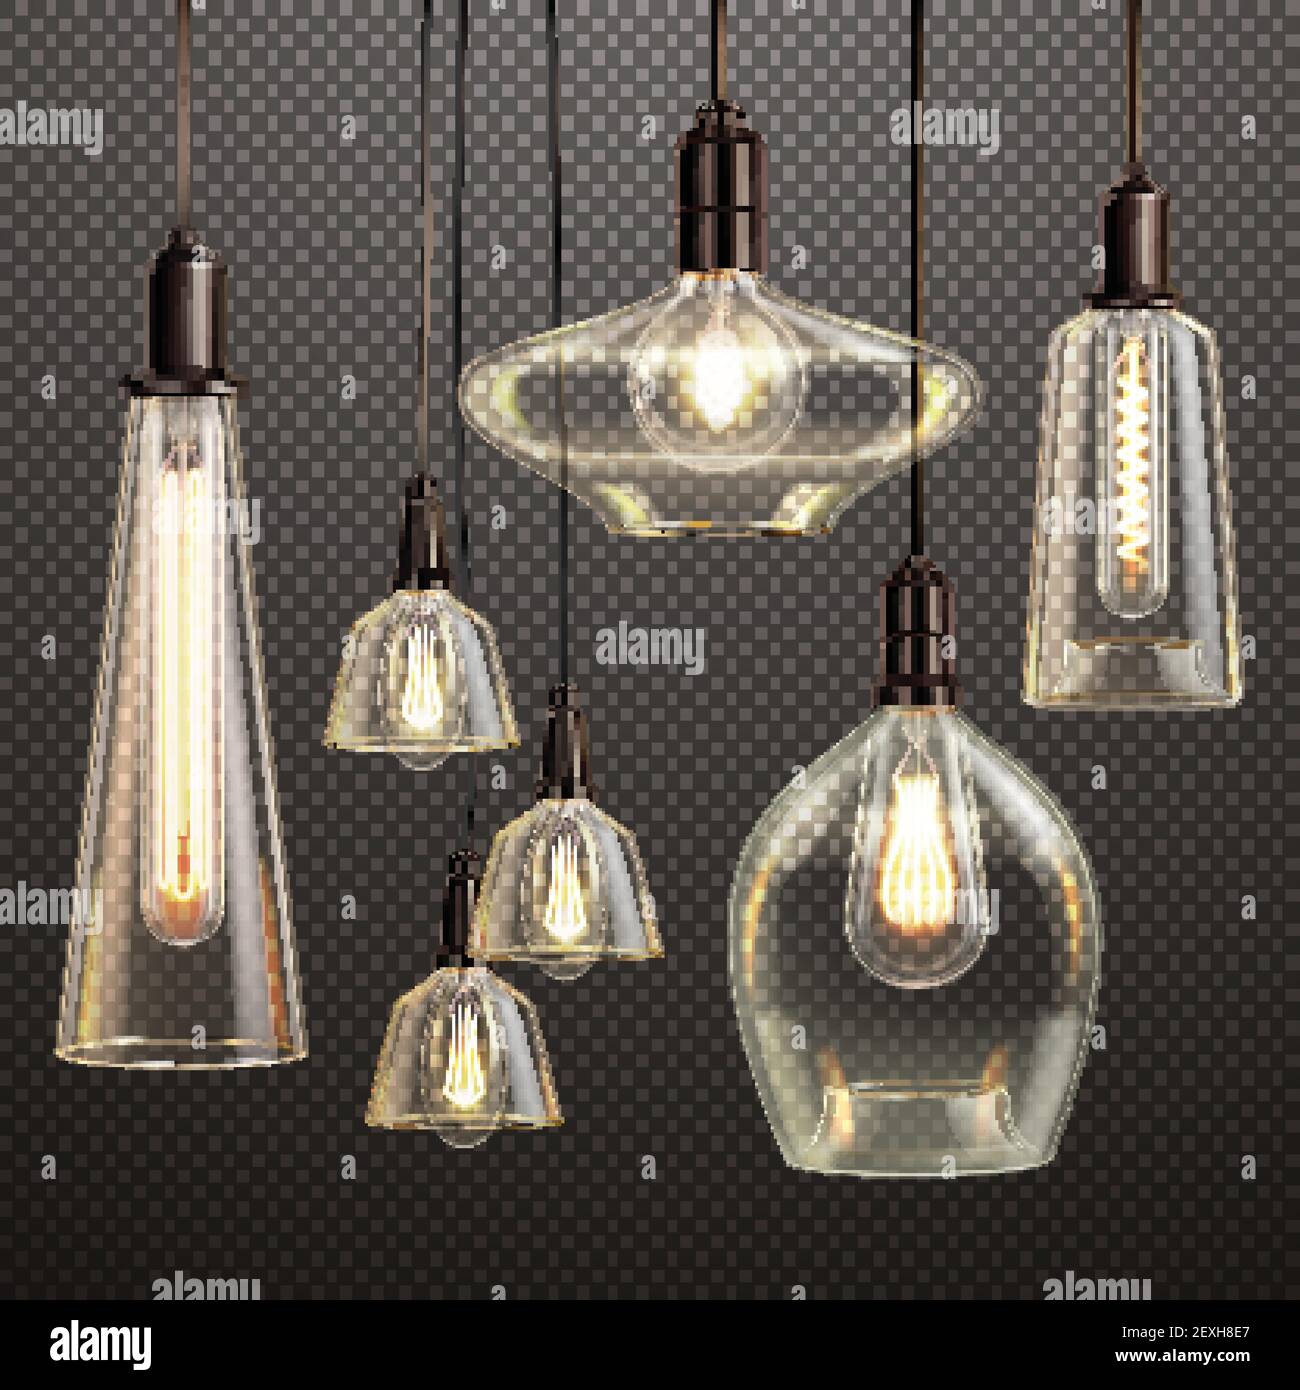 Lampes suspendues en verre transparent avec filament lumineux LED antique bulbes réaliste dégradé foncé transparent set vector illustration Illustration de Vecteur